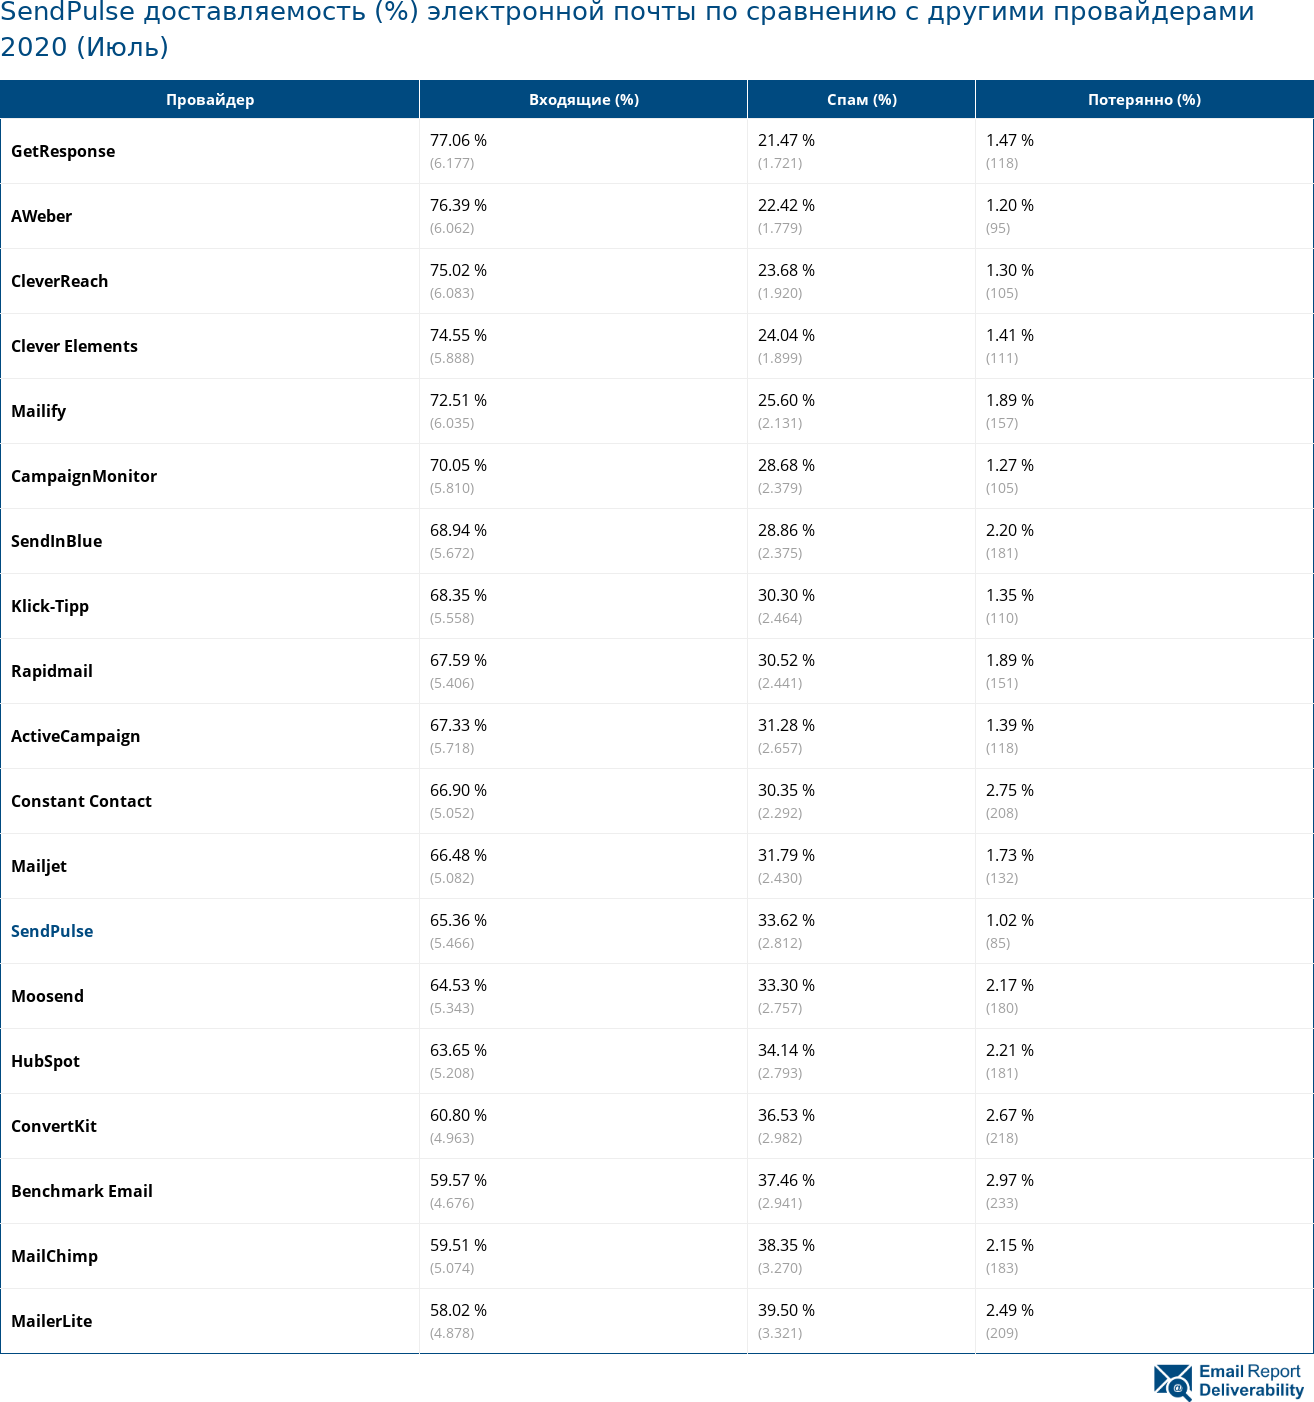 SendPulse доставляемость (%) электронной почты по сравнению с другими провайдерами 2020 (Июль)